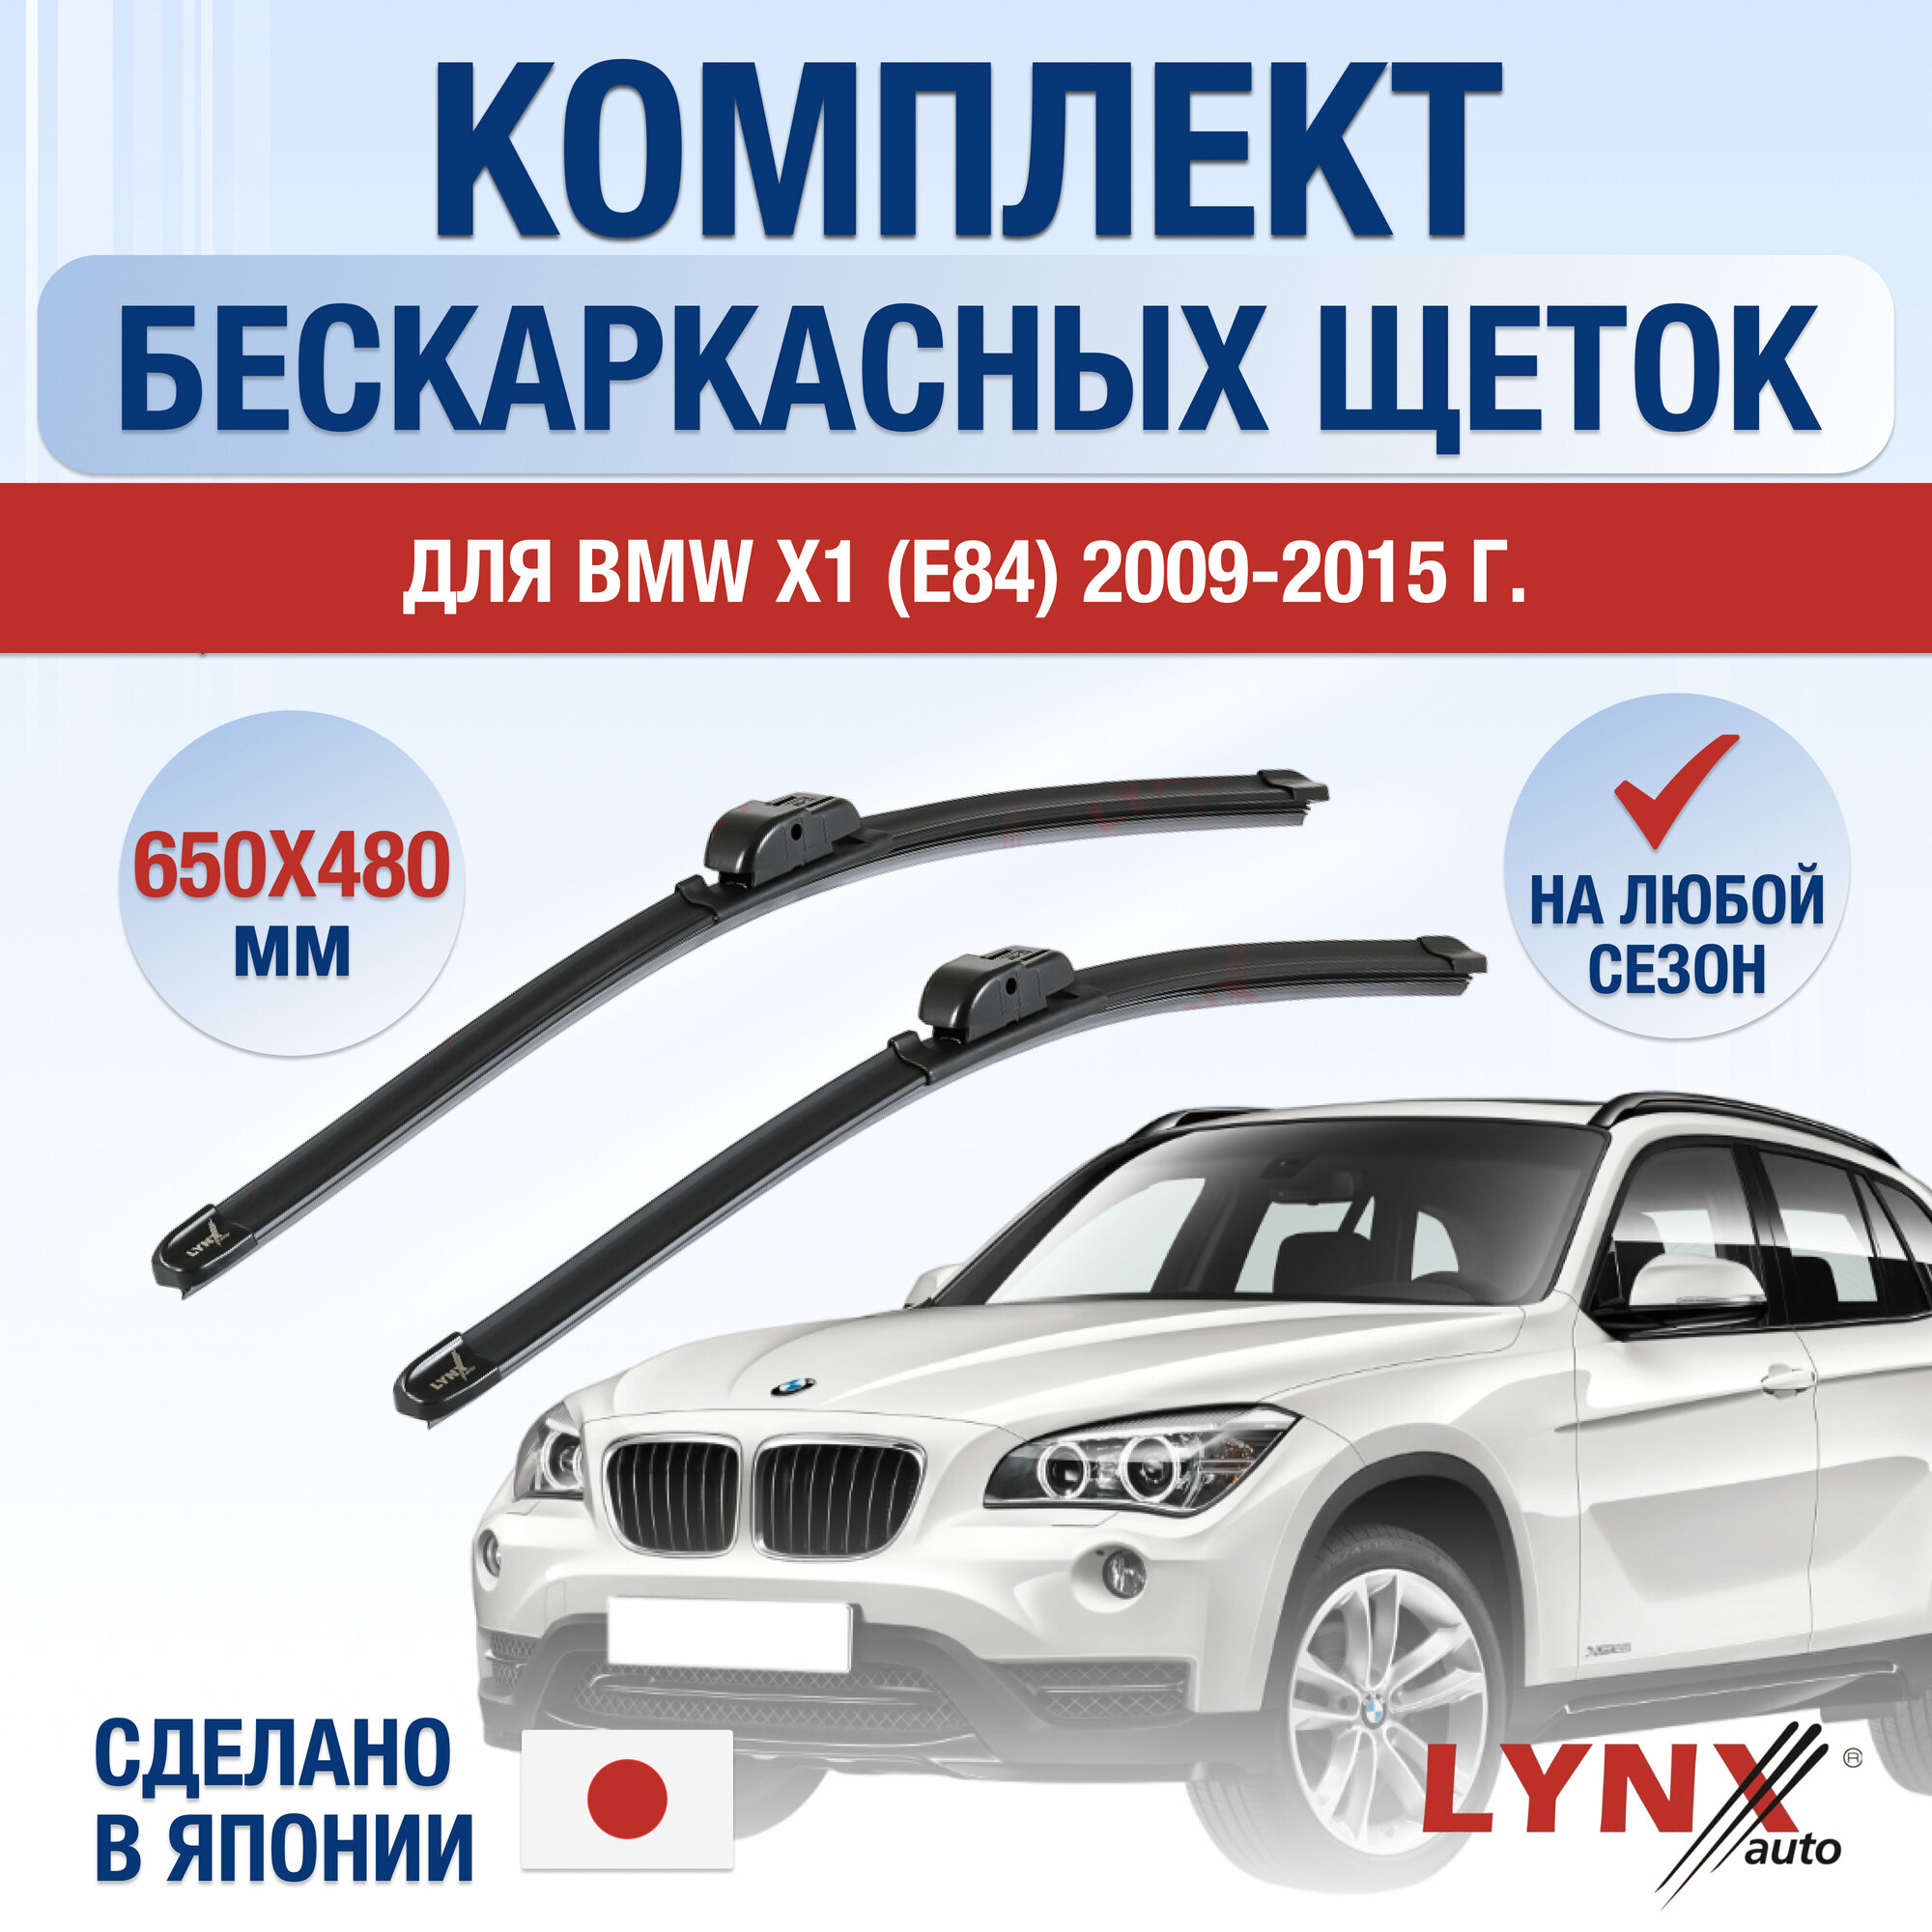 Щетки стеклоочистителя для BMW X1 1 (E84) / 2009 2010 2011 2012 2013 2014 2015 / Комплект бескаркасных дворников 600 480 мм БМВ Х1